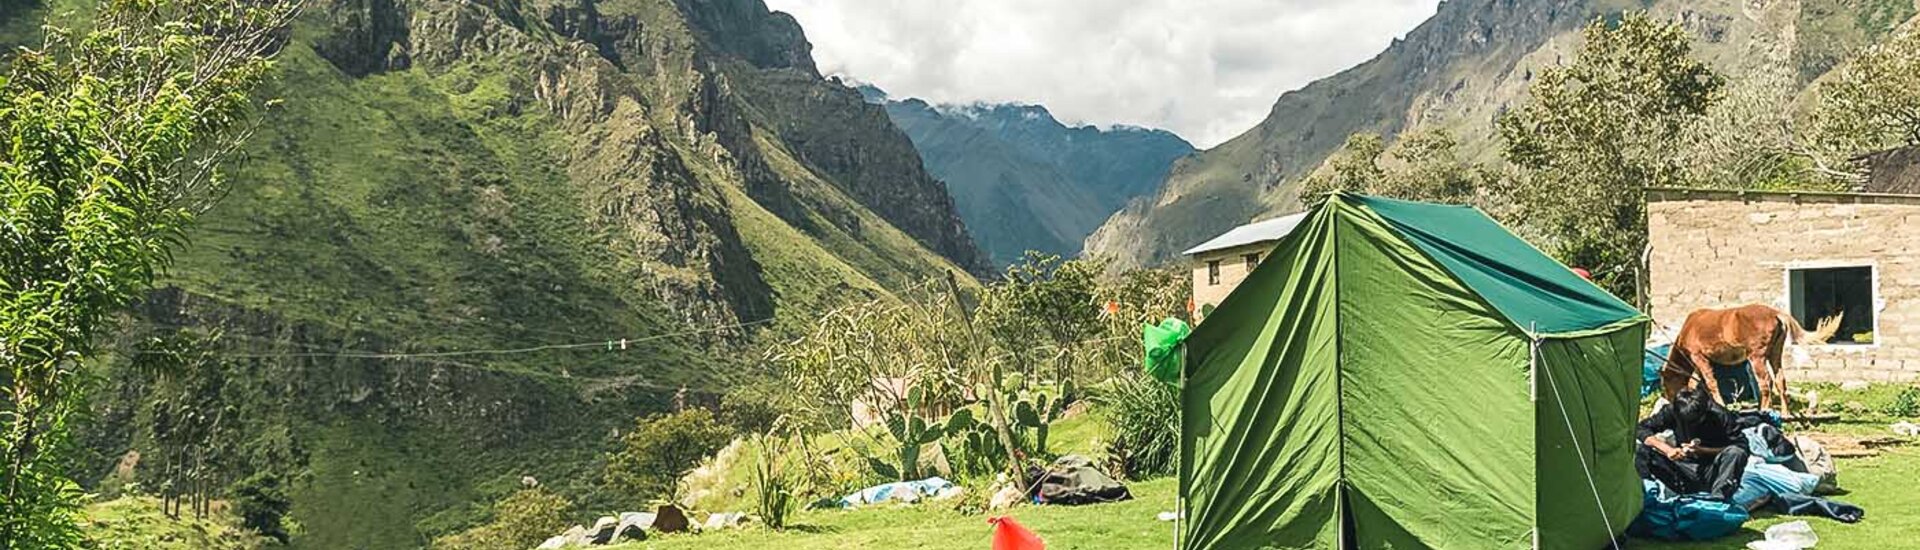 Zeltlager am Inka Trail